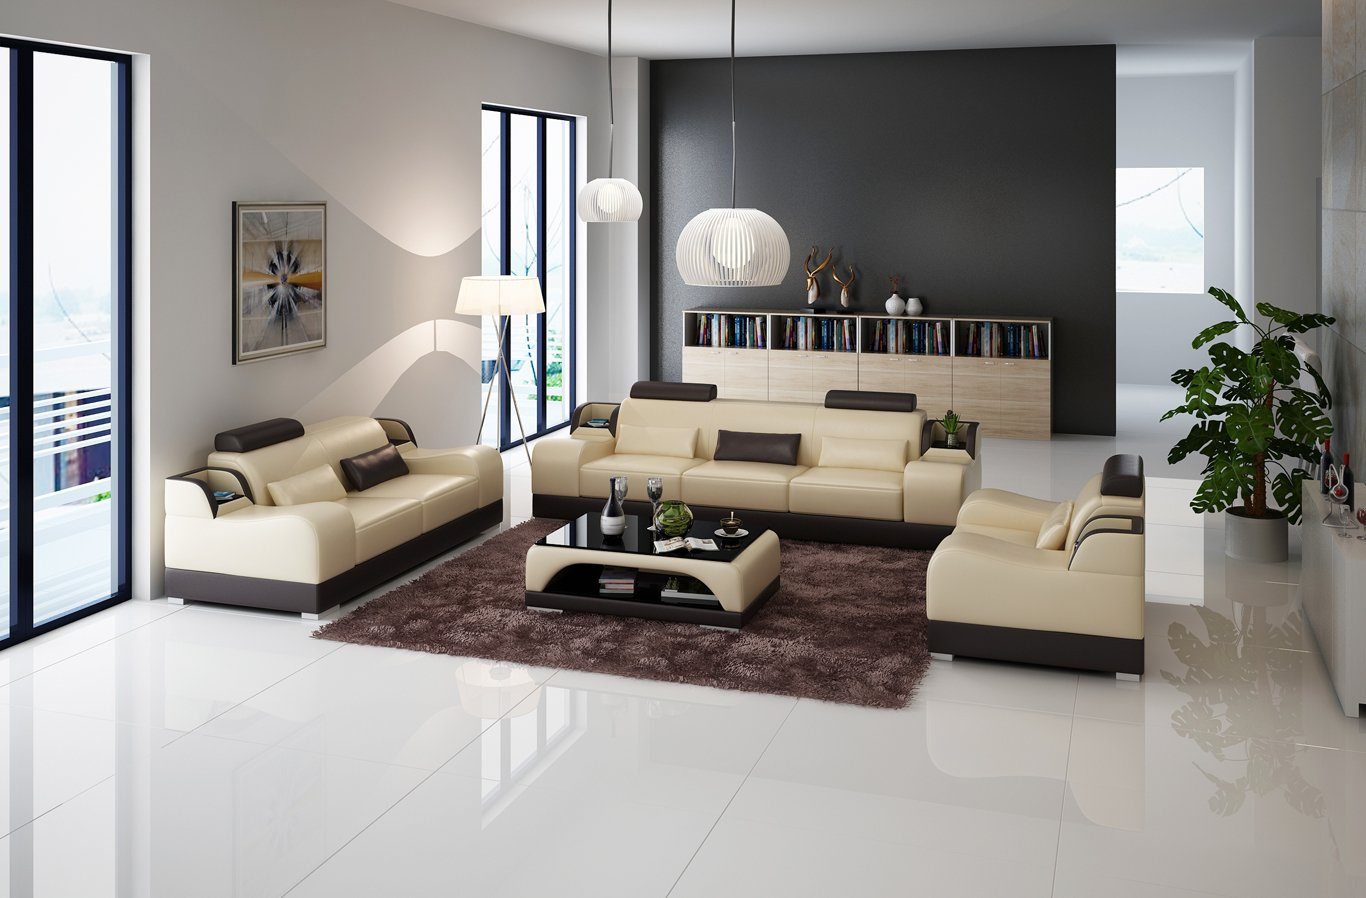 JVmoebel Sofa Design Couch Polster Sofas Leder Modern 3 Sitzer Dreisitzer Couchen, Made in Europe Beige/Braun